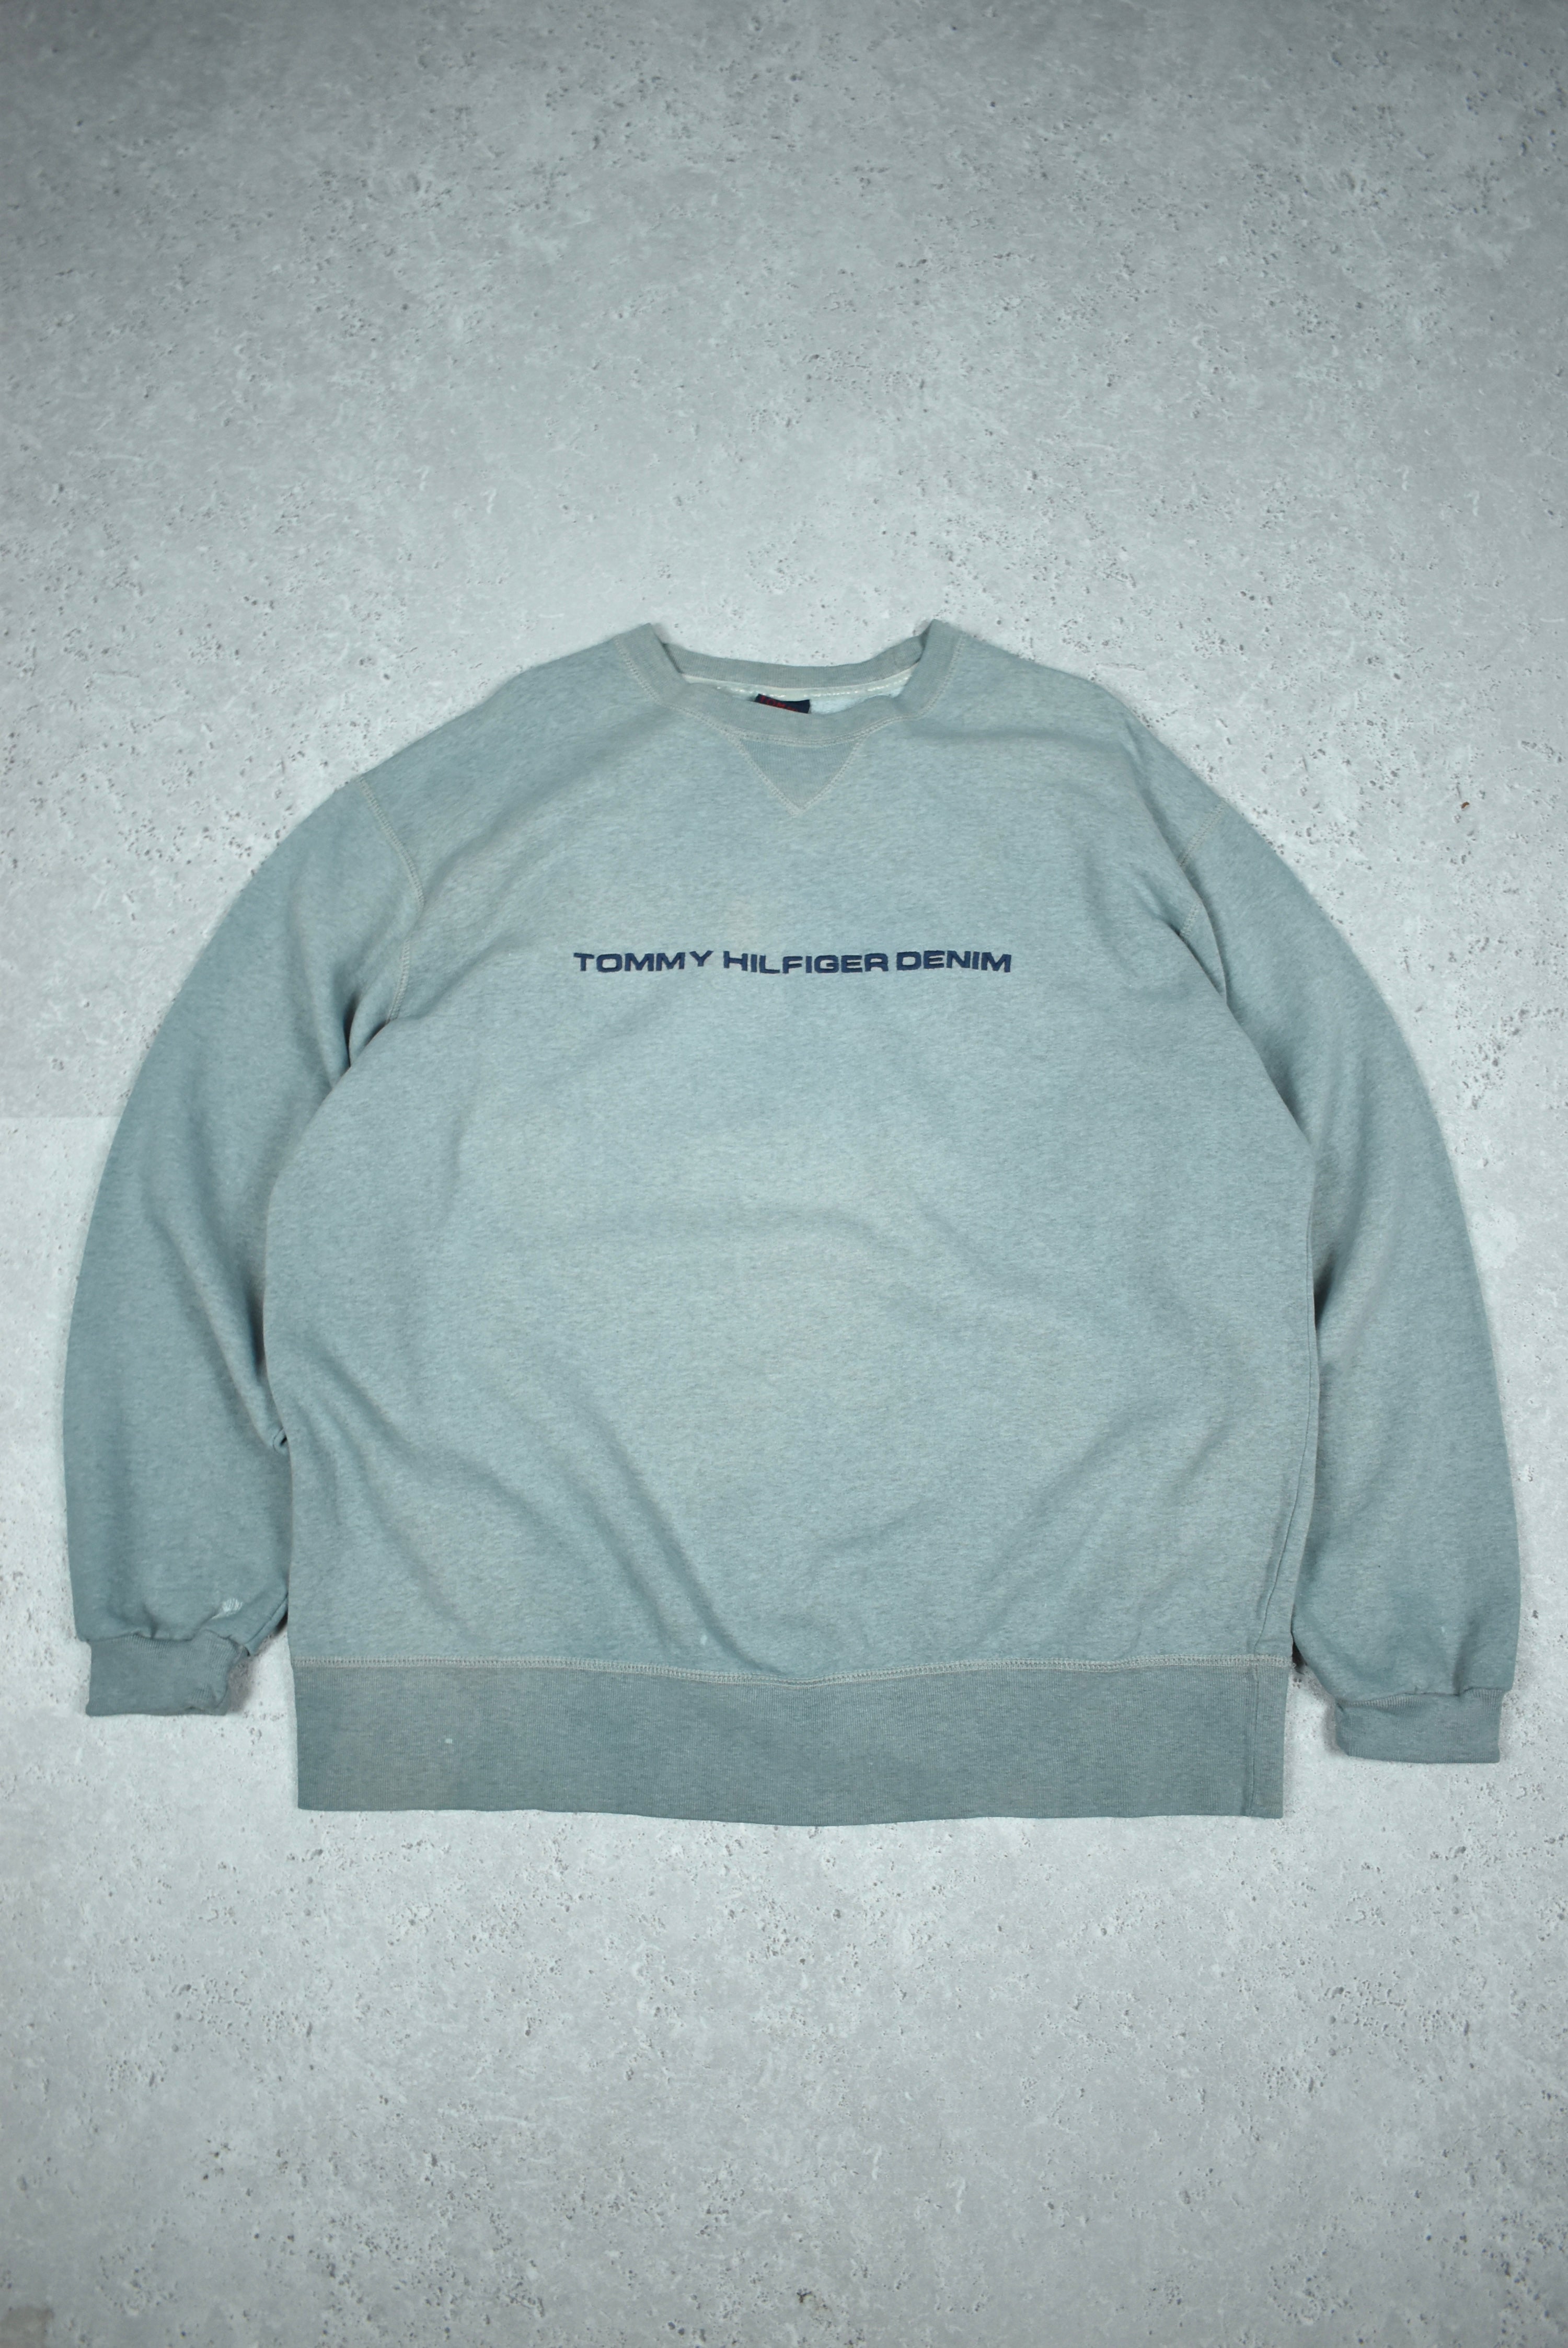 Vintage Tommy Hilfiger Embroidery Sweatshirt Medium